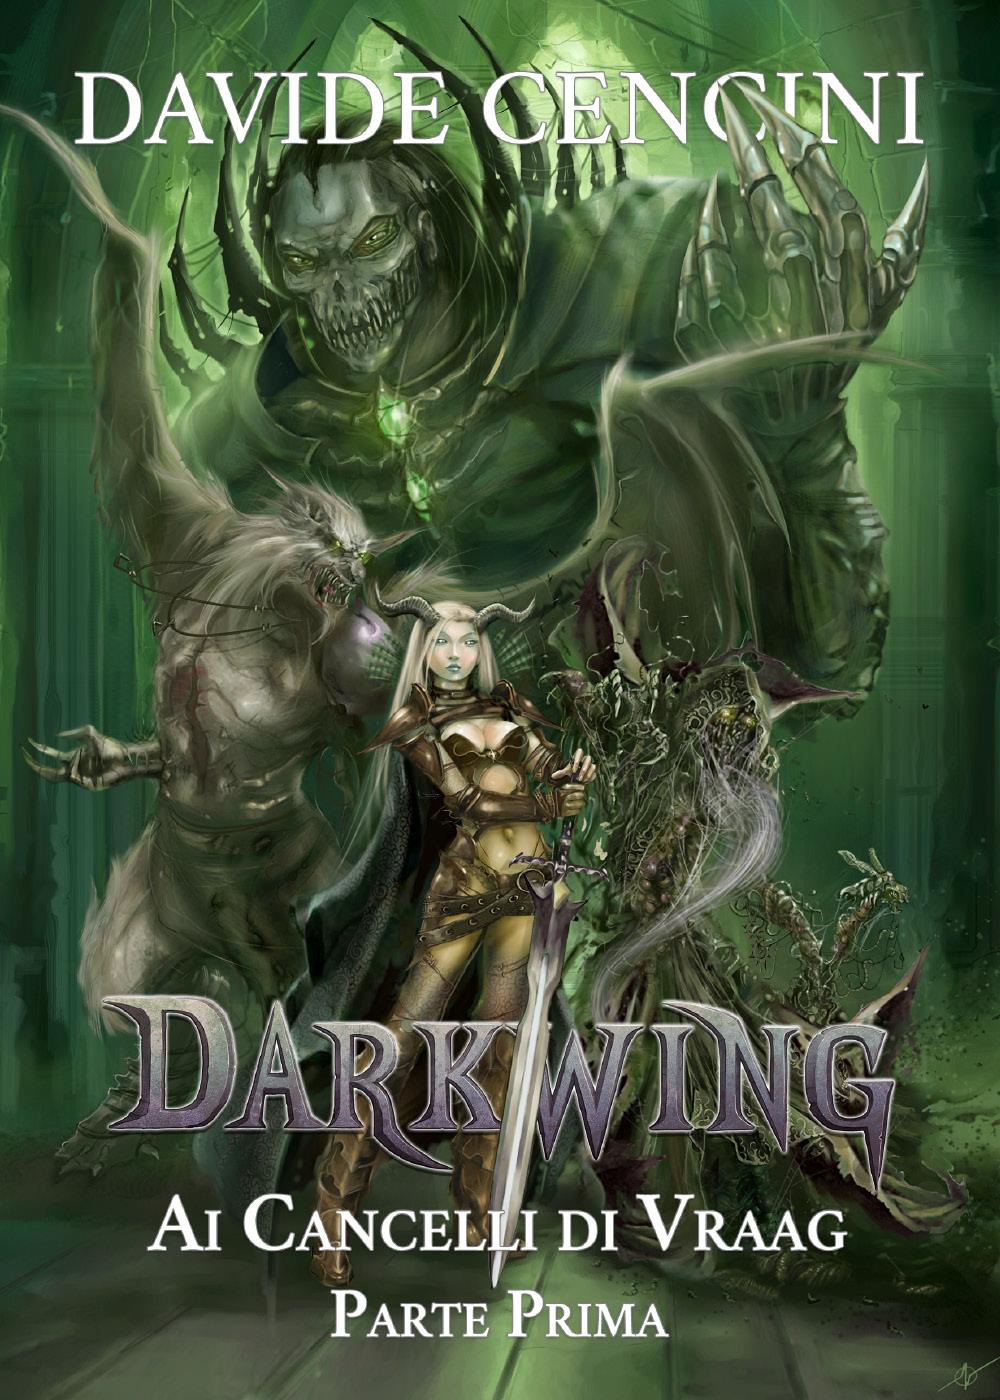 Darkwing vol. 4 - Ai Cancelli di Vraag Parte Prima